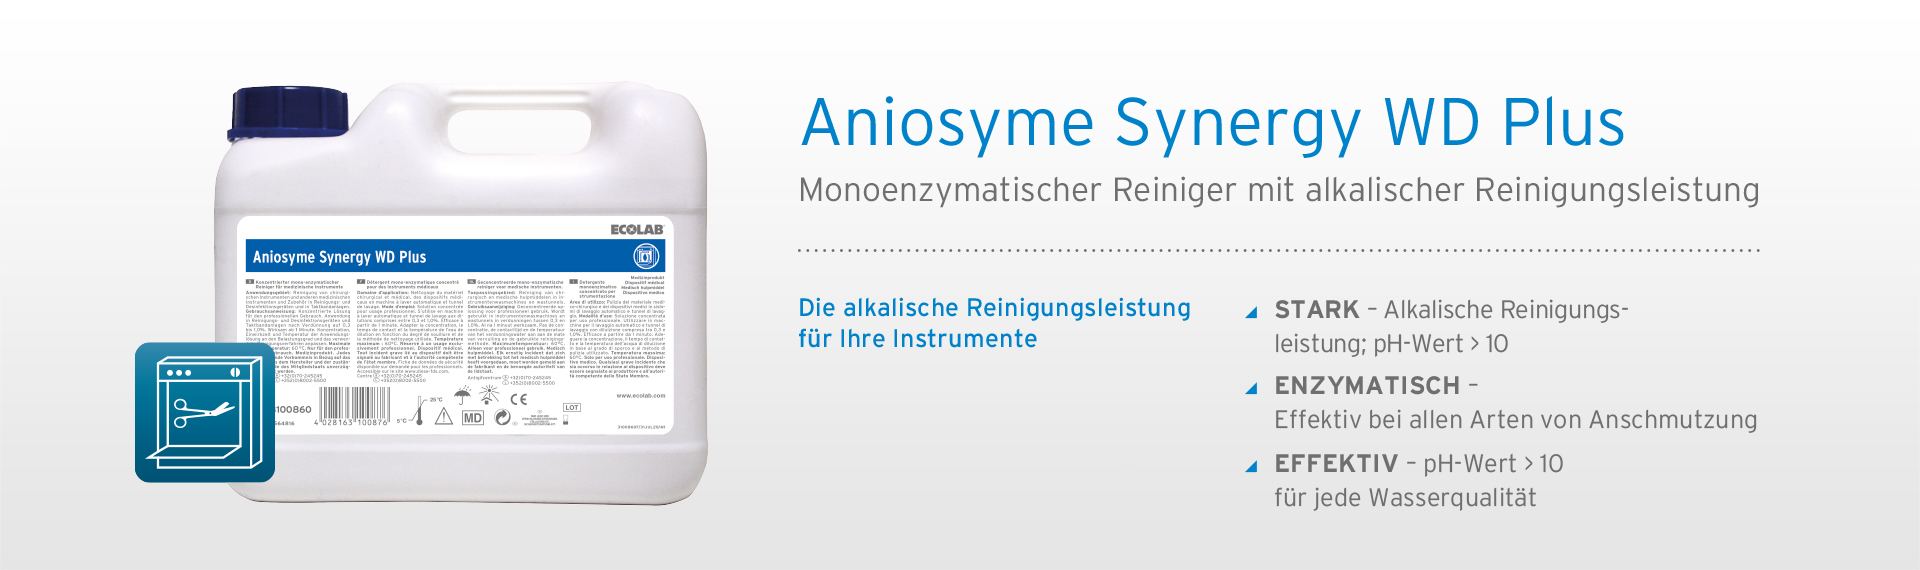 Aniosyme Synergy WD Plus